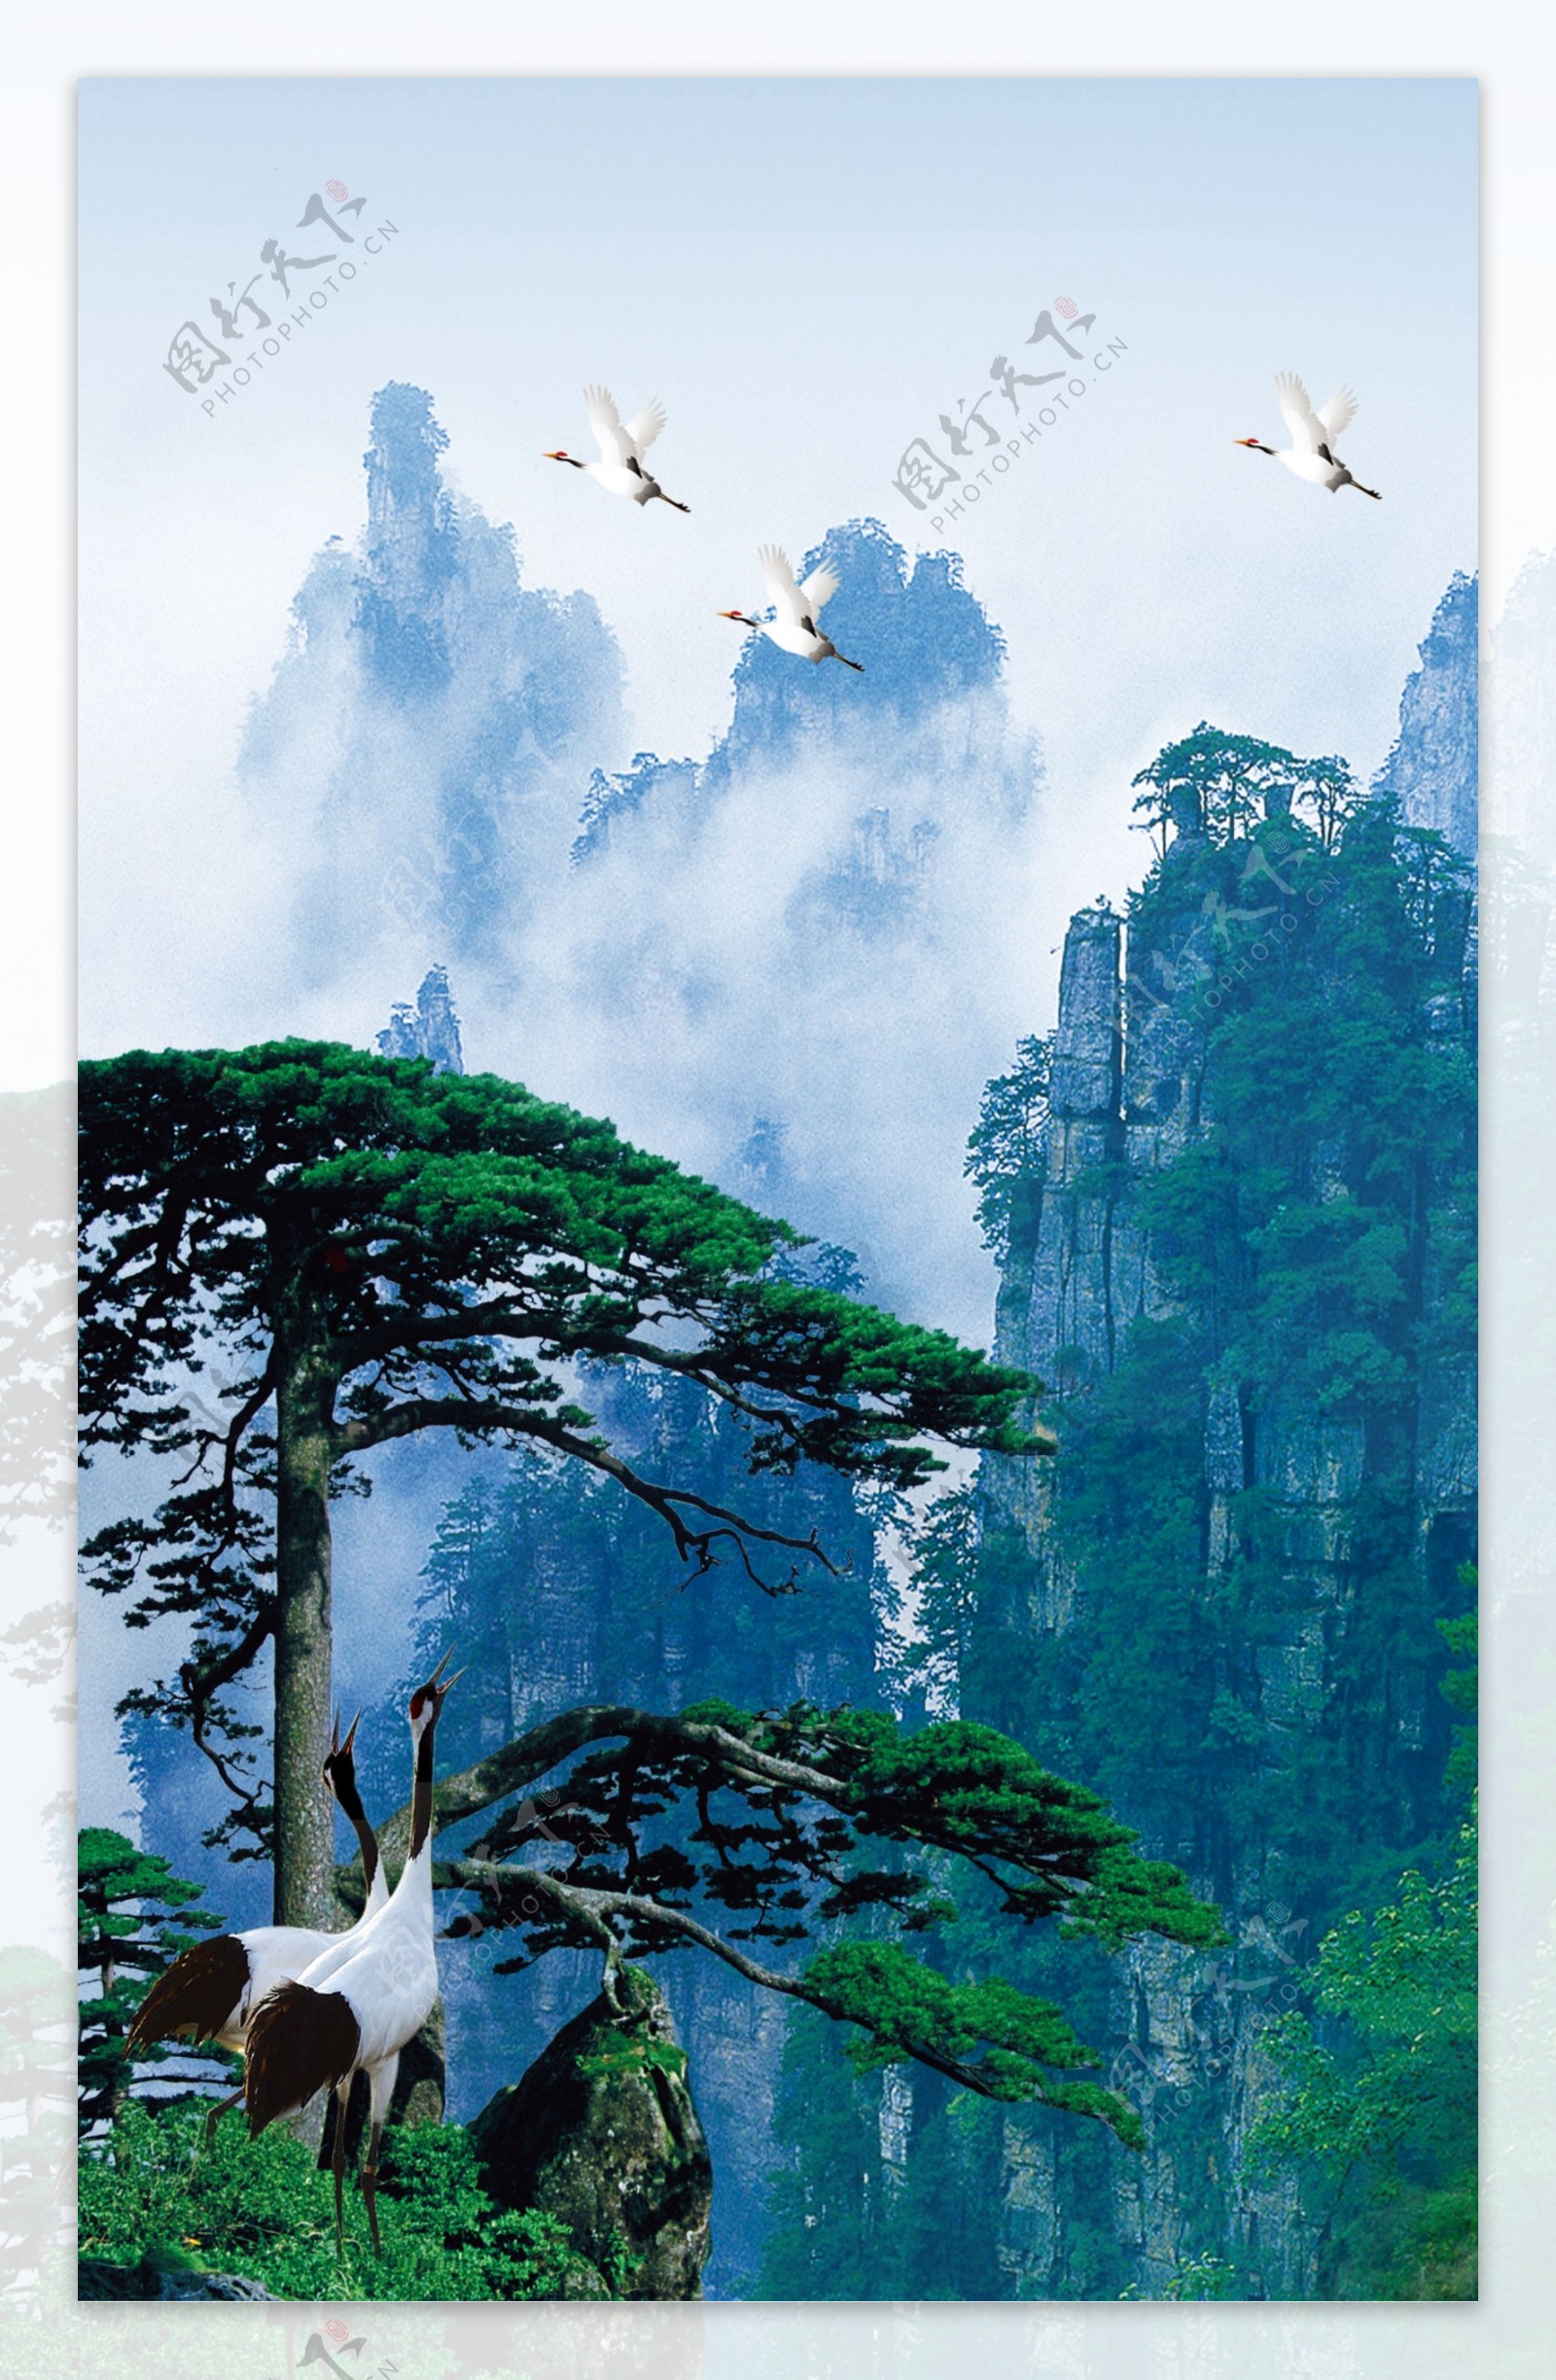 松鹤自然风景图片